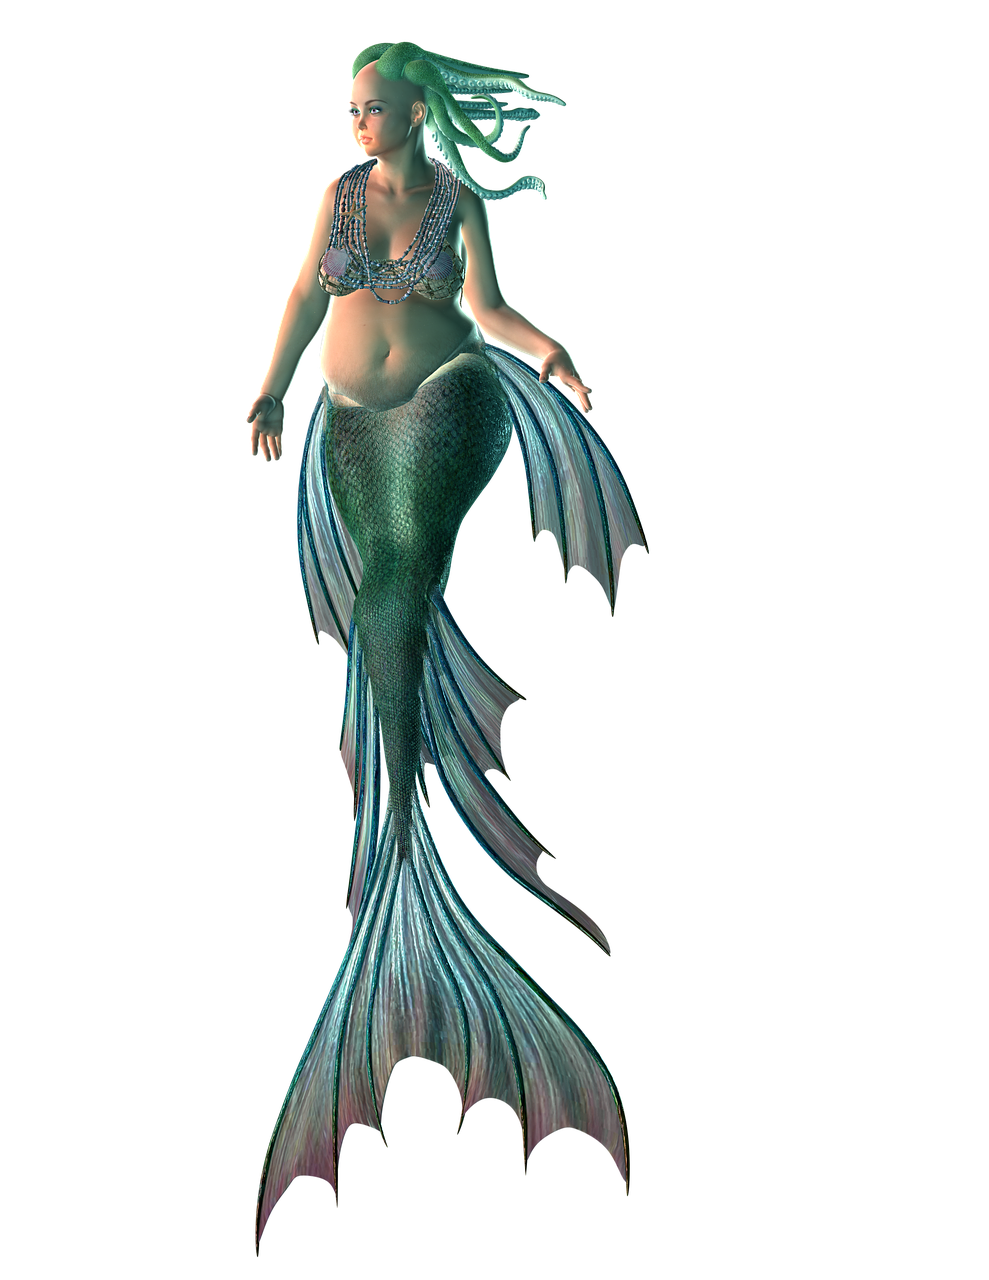 mermaid water creature free photo